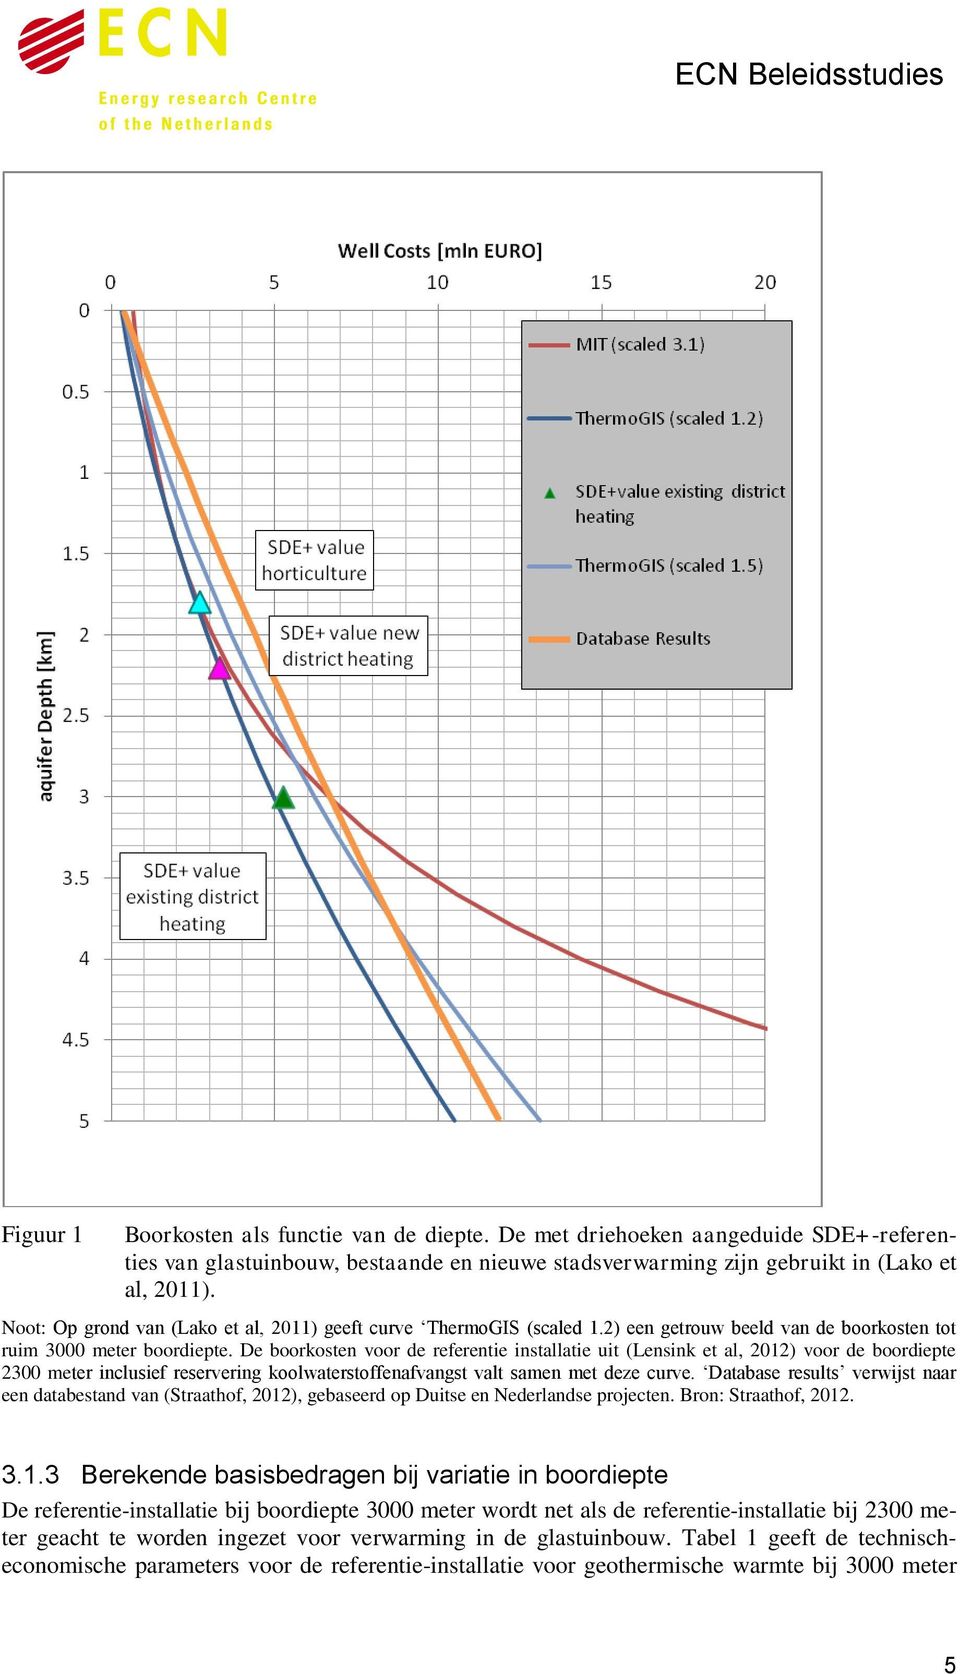 Noot: Op grond van (Lako et al, 2011) geeft curve ThermoGIS (scaled 1.2) een getrouw beeld van de boorkosten tot ruim 3000 meter boordiepte.